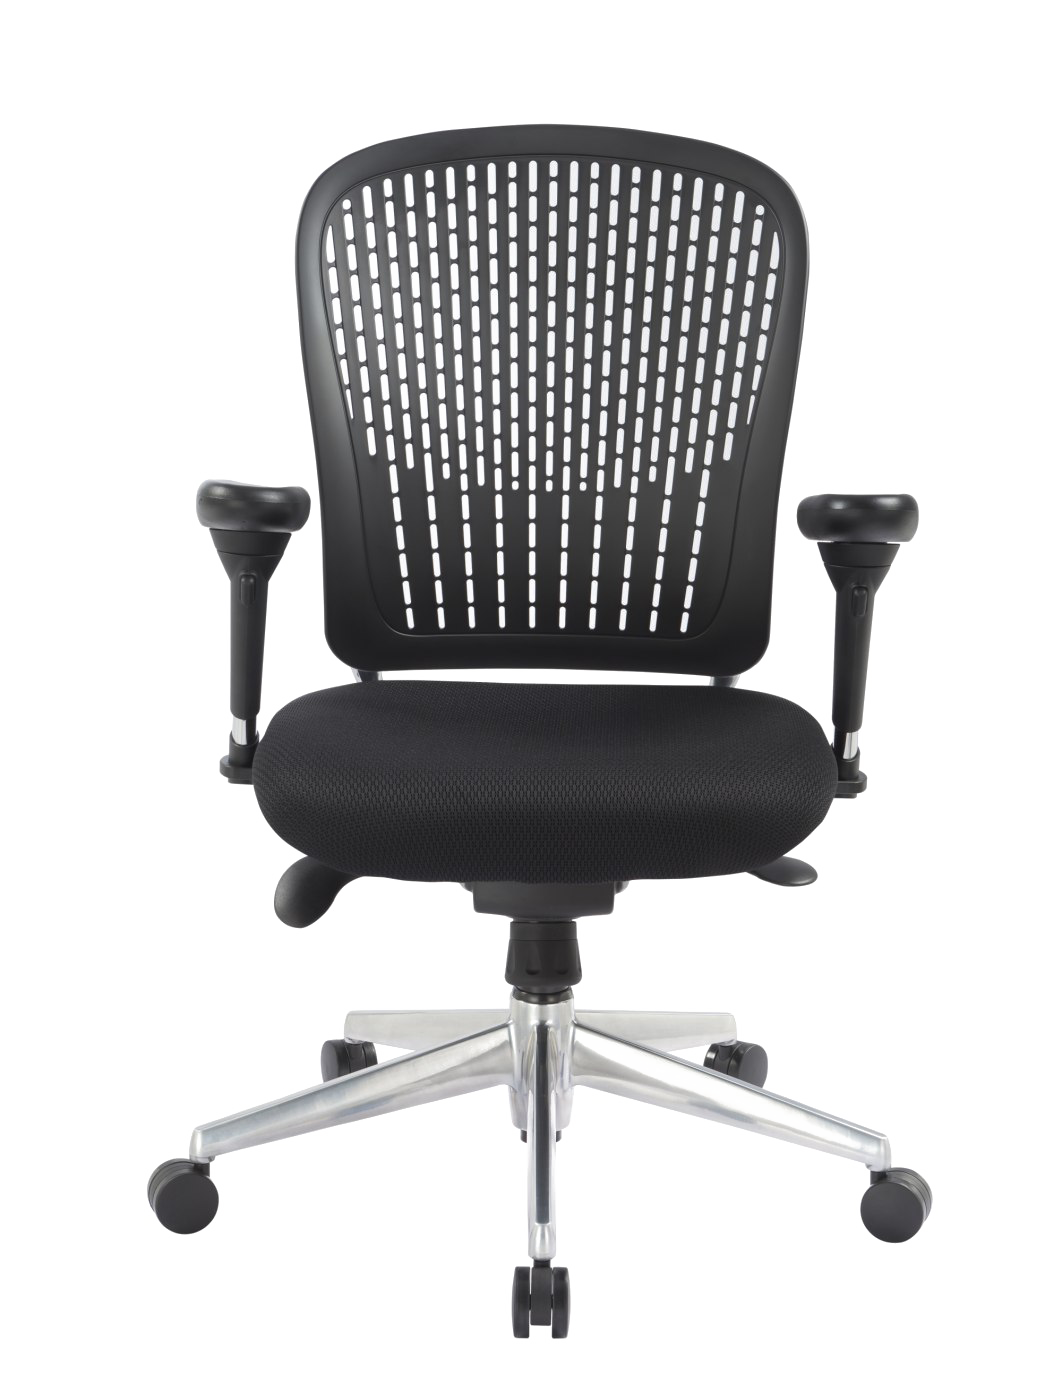 Cadeira de escritório PNG Image